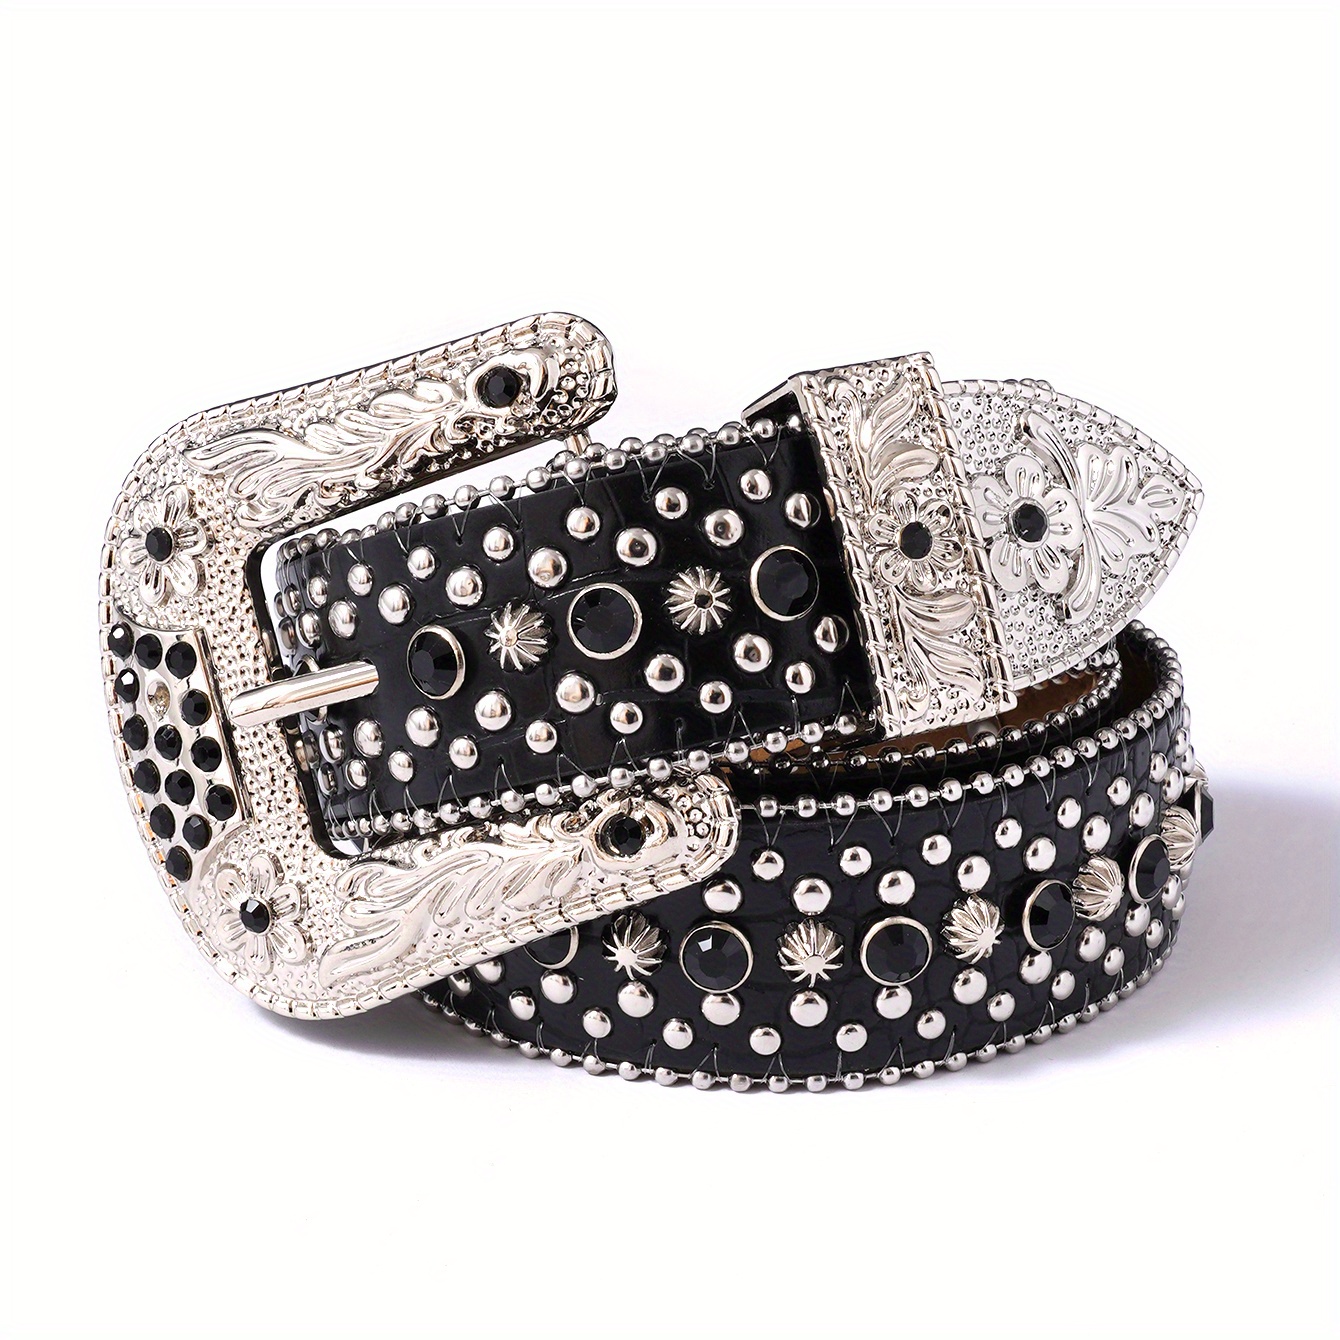 Diamond Luxury Belt Strap Men's Women's Designer Belt Bling Belt